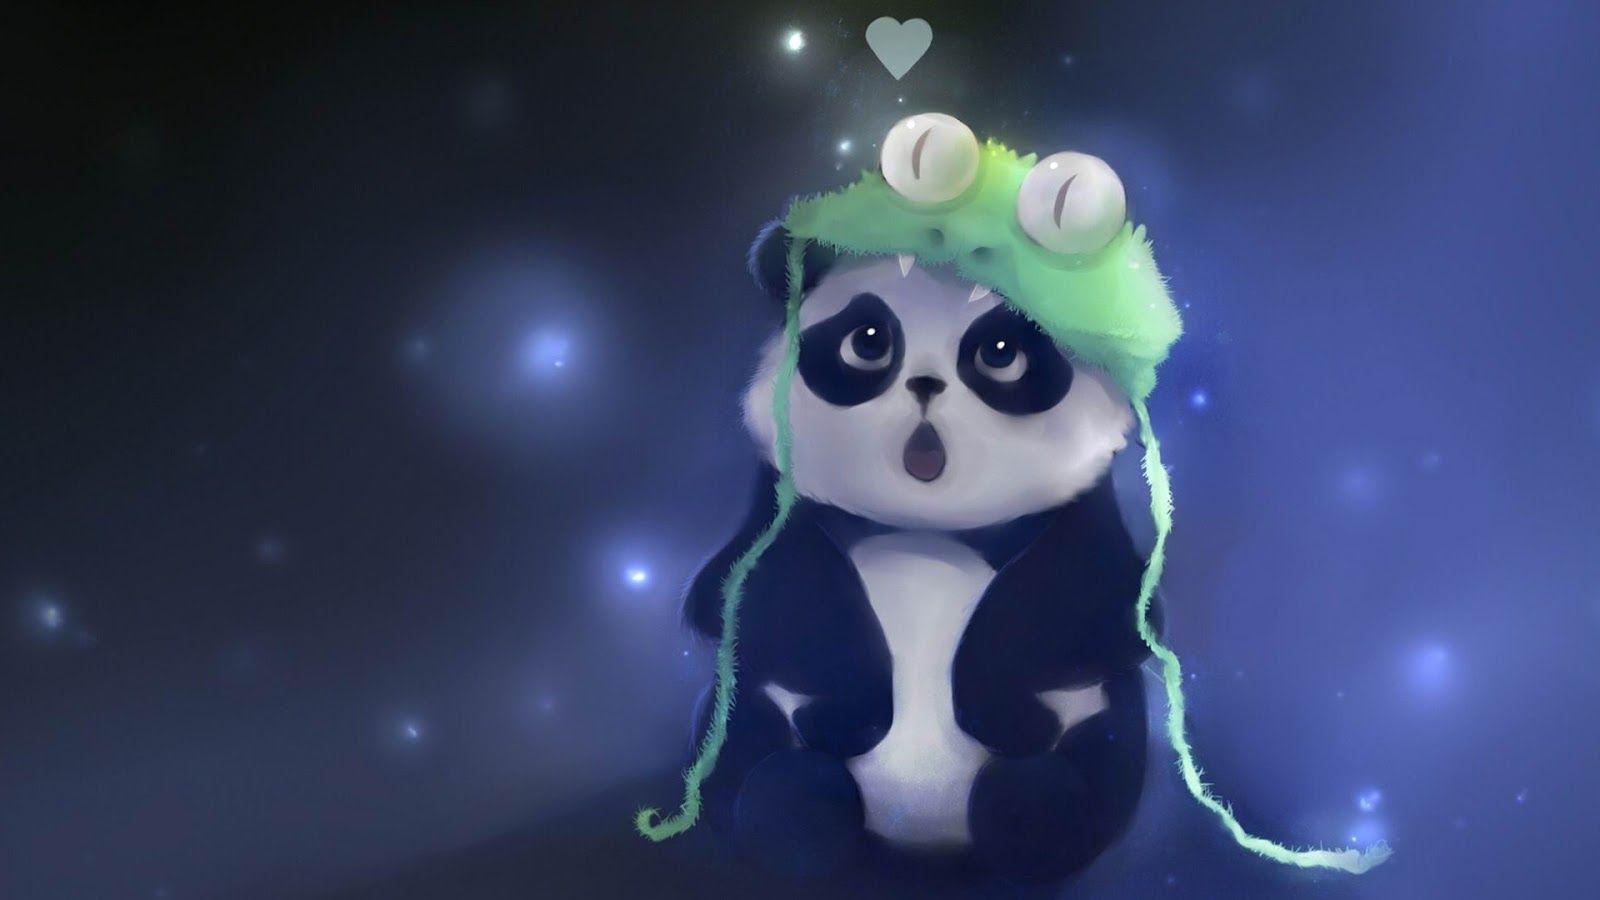 Cute Art. Cute Panda Art. Art Panda Love. Panda Art